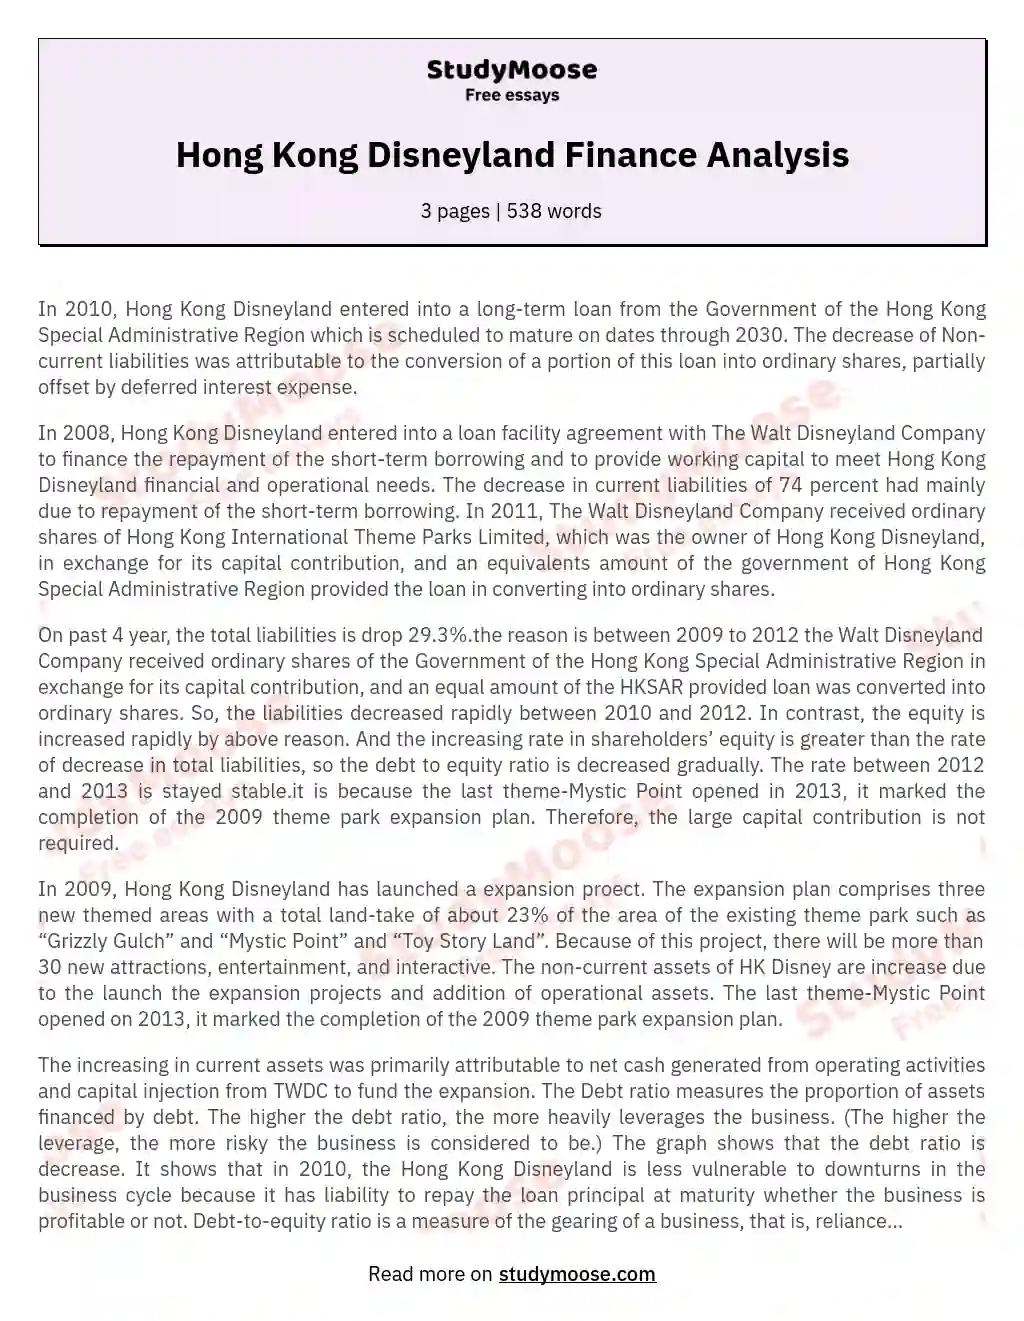 Hong Kong Disneyland Finance Analysis